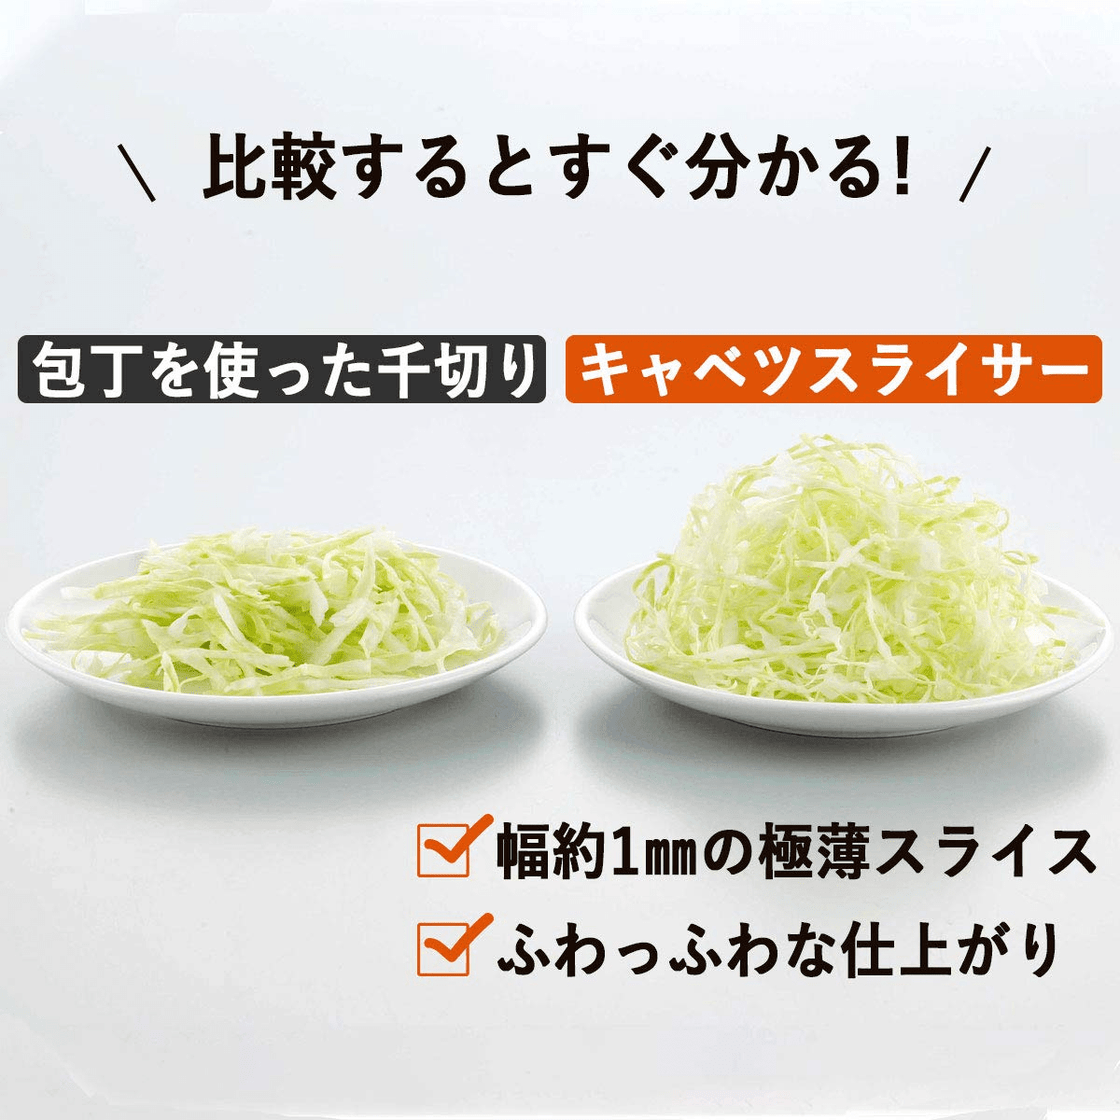 https://wafuu.com/cdn/shop/products/shimomura-cabbage-slicer-shredder-grater-cutter-vegetable-made-in-japan-186213_1120x.png?v=1695256666